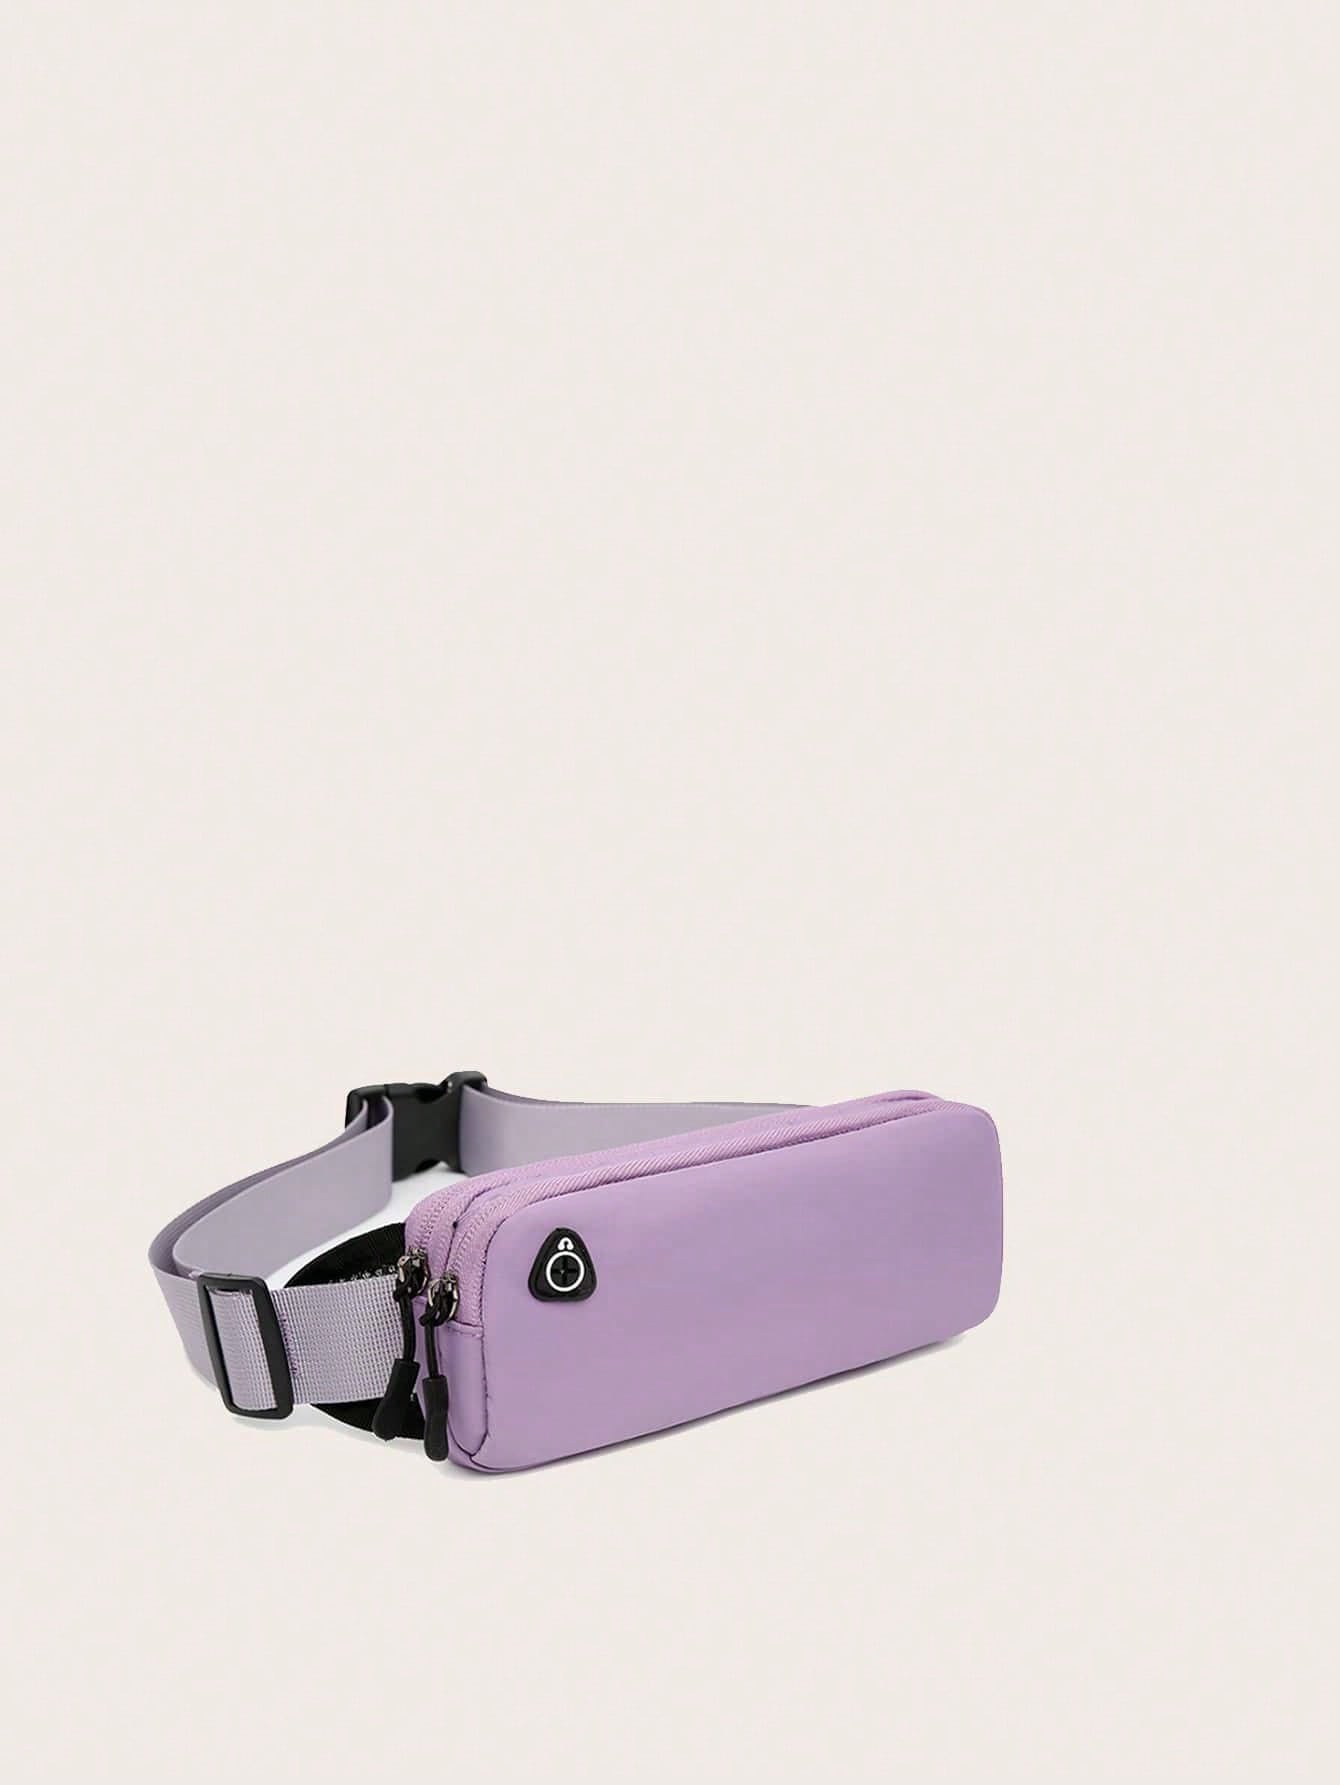 бесшовная невидимая поясная сумка для бега поясная сумка унисекс спортивная поясная сумка сумка для спортзала бега фитнеса бега пробеж Мини-минималистичная поясная сумка, фиолетовый